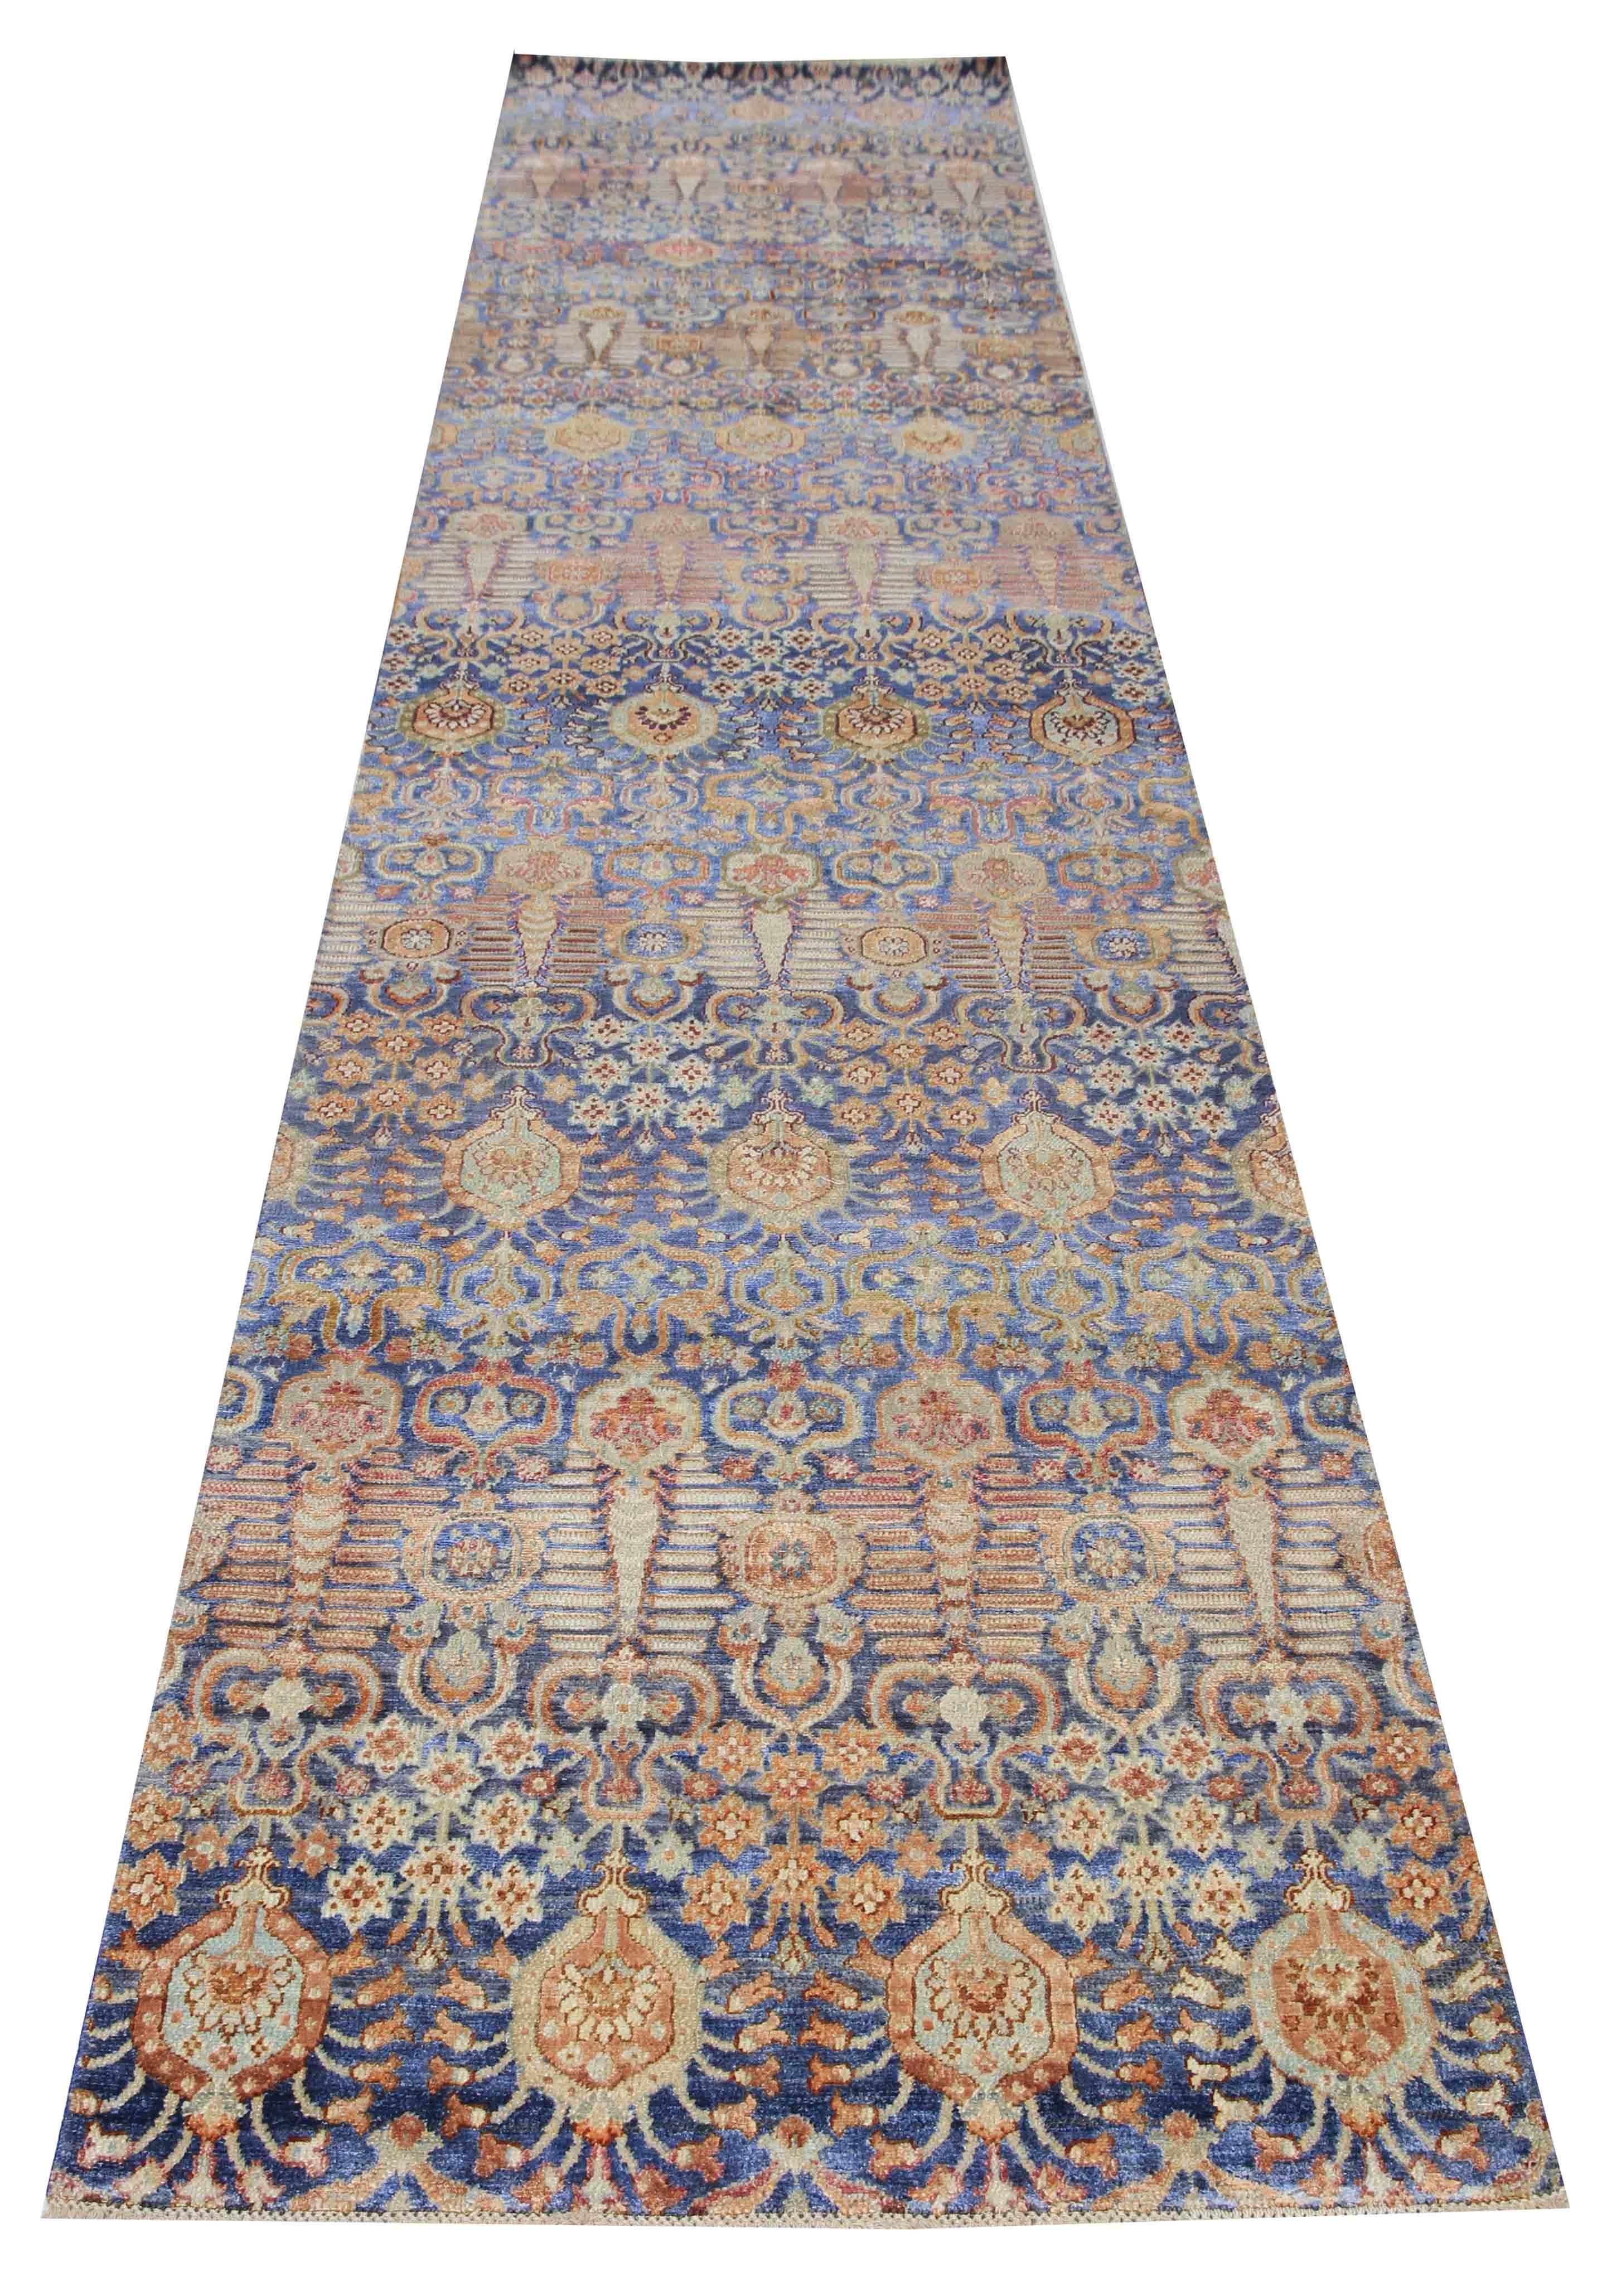 Ce tapis en soie et laine est un magnifique chemin de table mesurant 3' x 14'11''. Le tapis présente des répétitions de motifs floraux simples qui forment le champ de ce tapis en laine vintage tissé à la main. Les motifs striés ont un charme